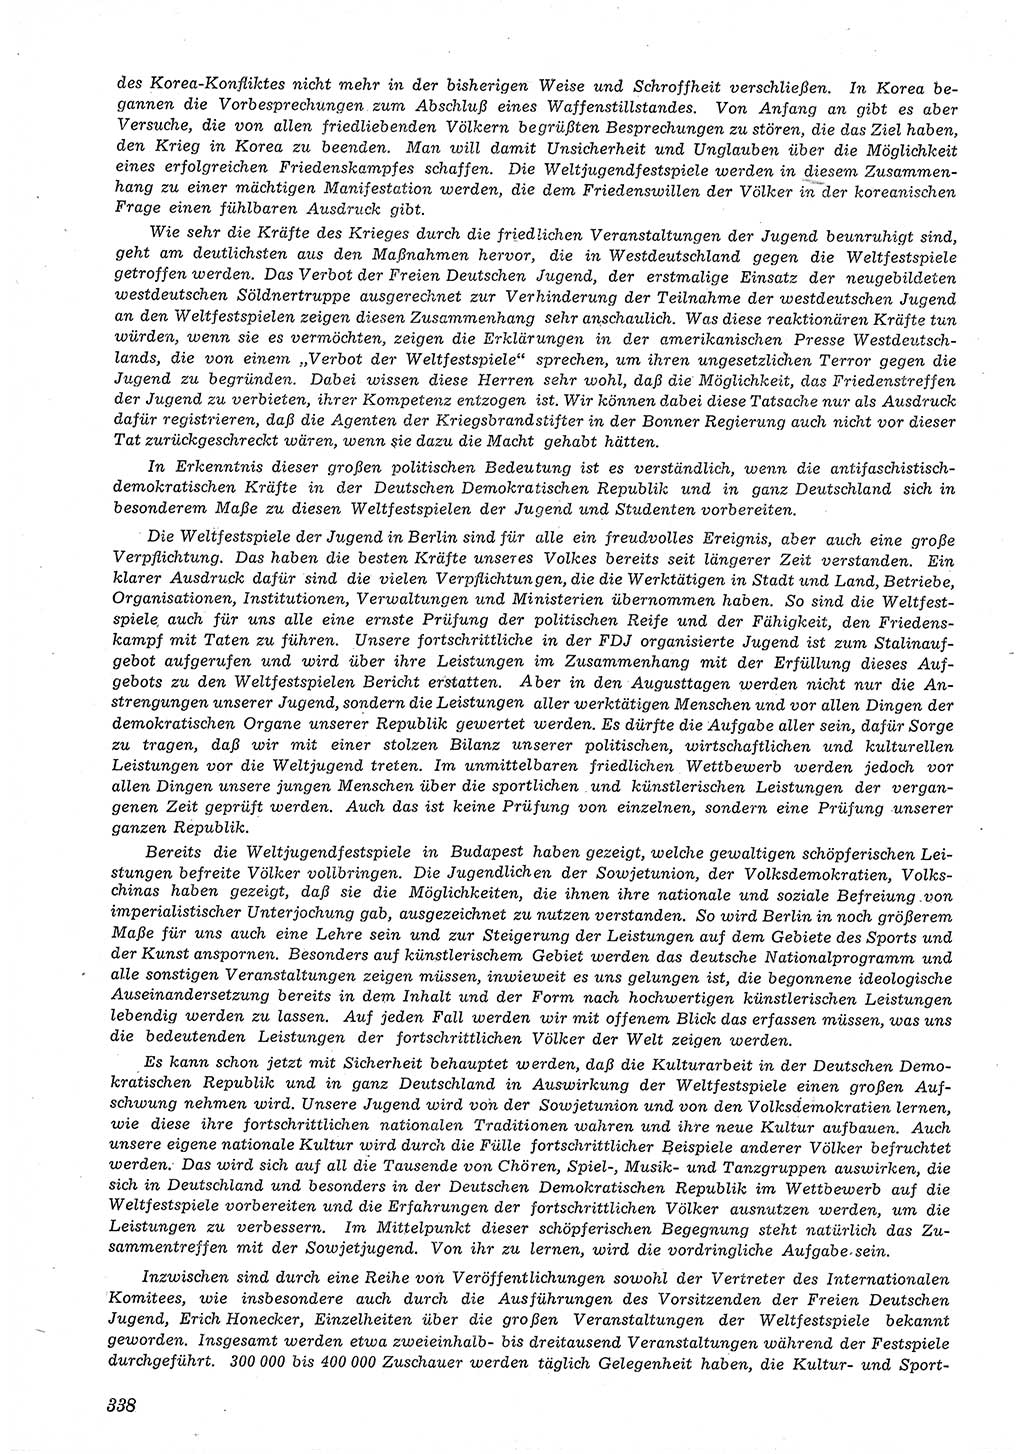 Neue Justiz (NJ), Zeitschrift für Recht und Rechtswissenschaft [Deutsche Demokratische Republik (DDR)], 5. Jahrgang 1951, Seite 338 (NJ DDR 1951, S. 338)